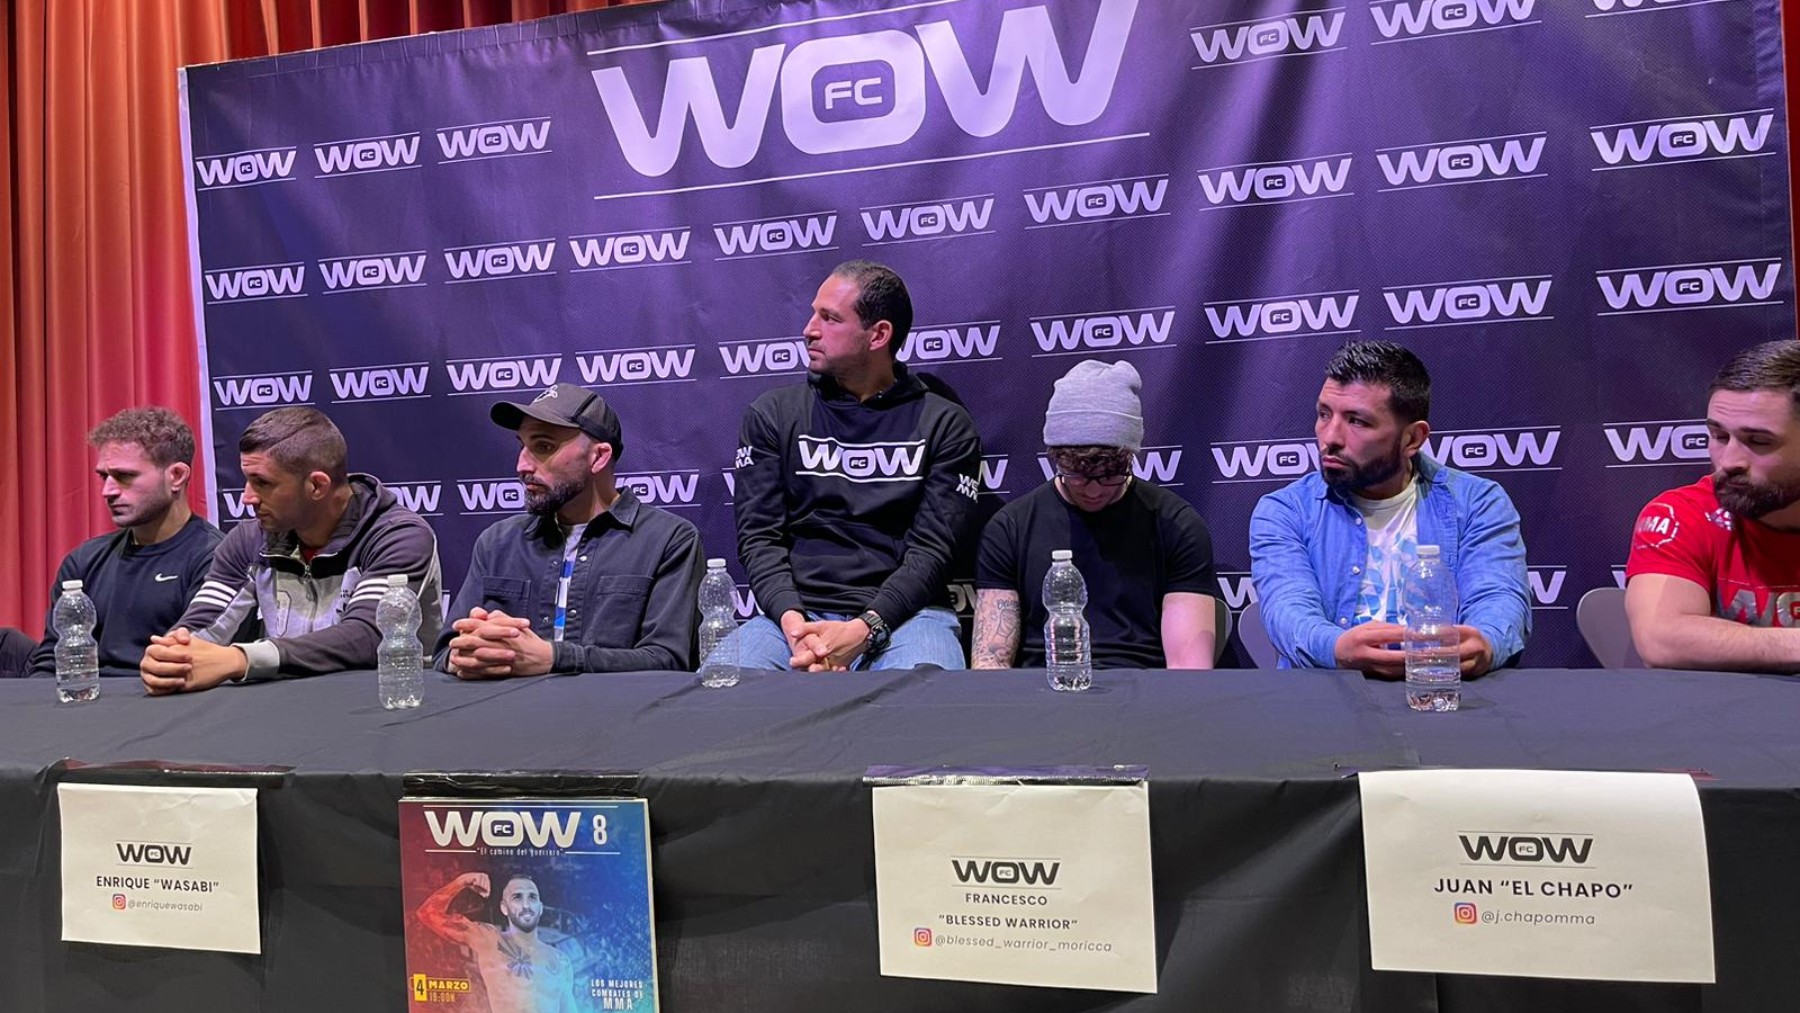 Luchadores para el evento WOW 8